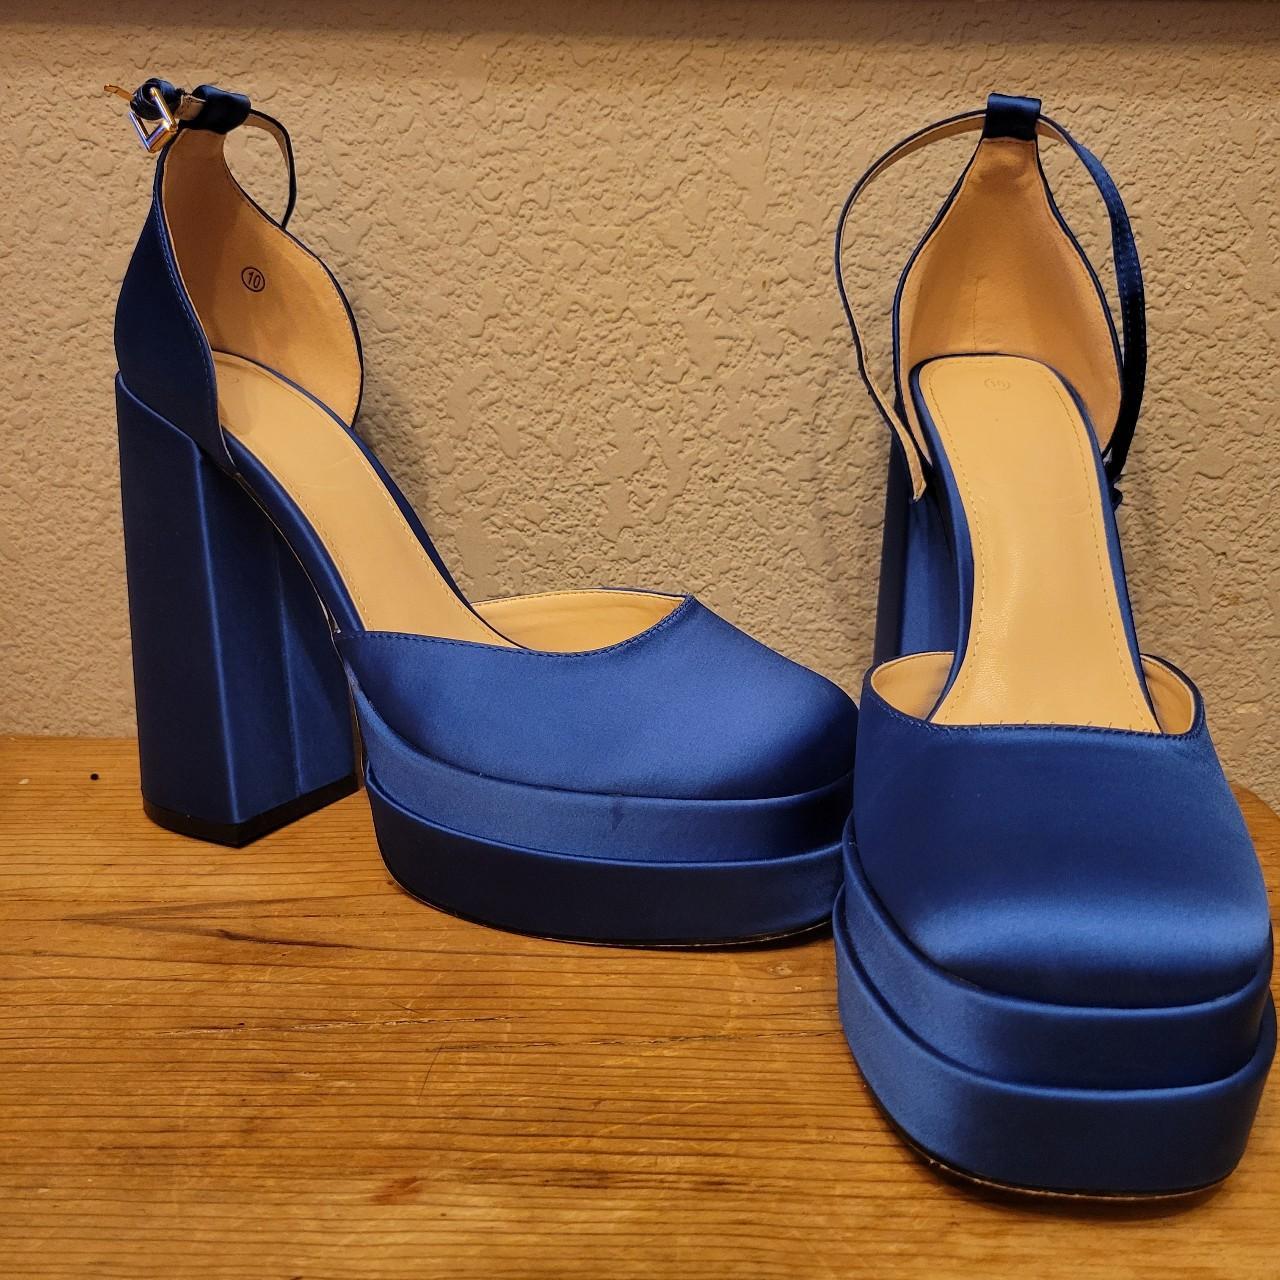 Satin blue steve madden platform close toed sandals - Depop